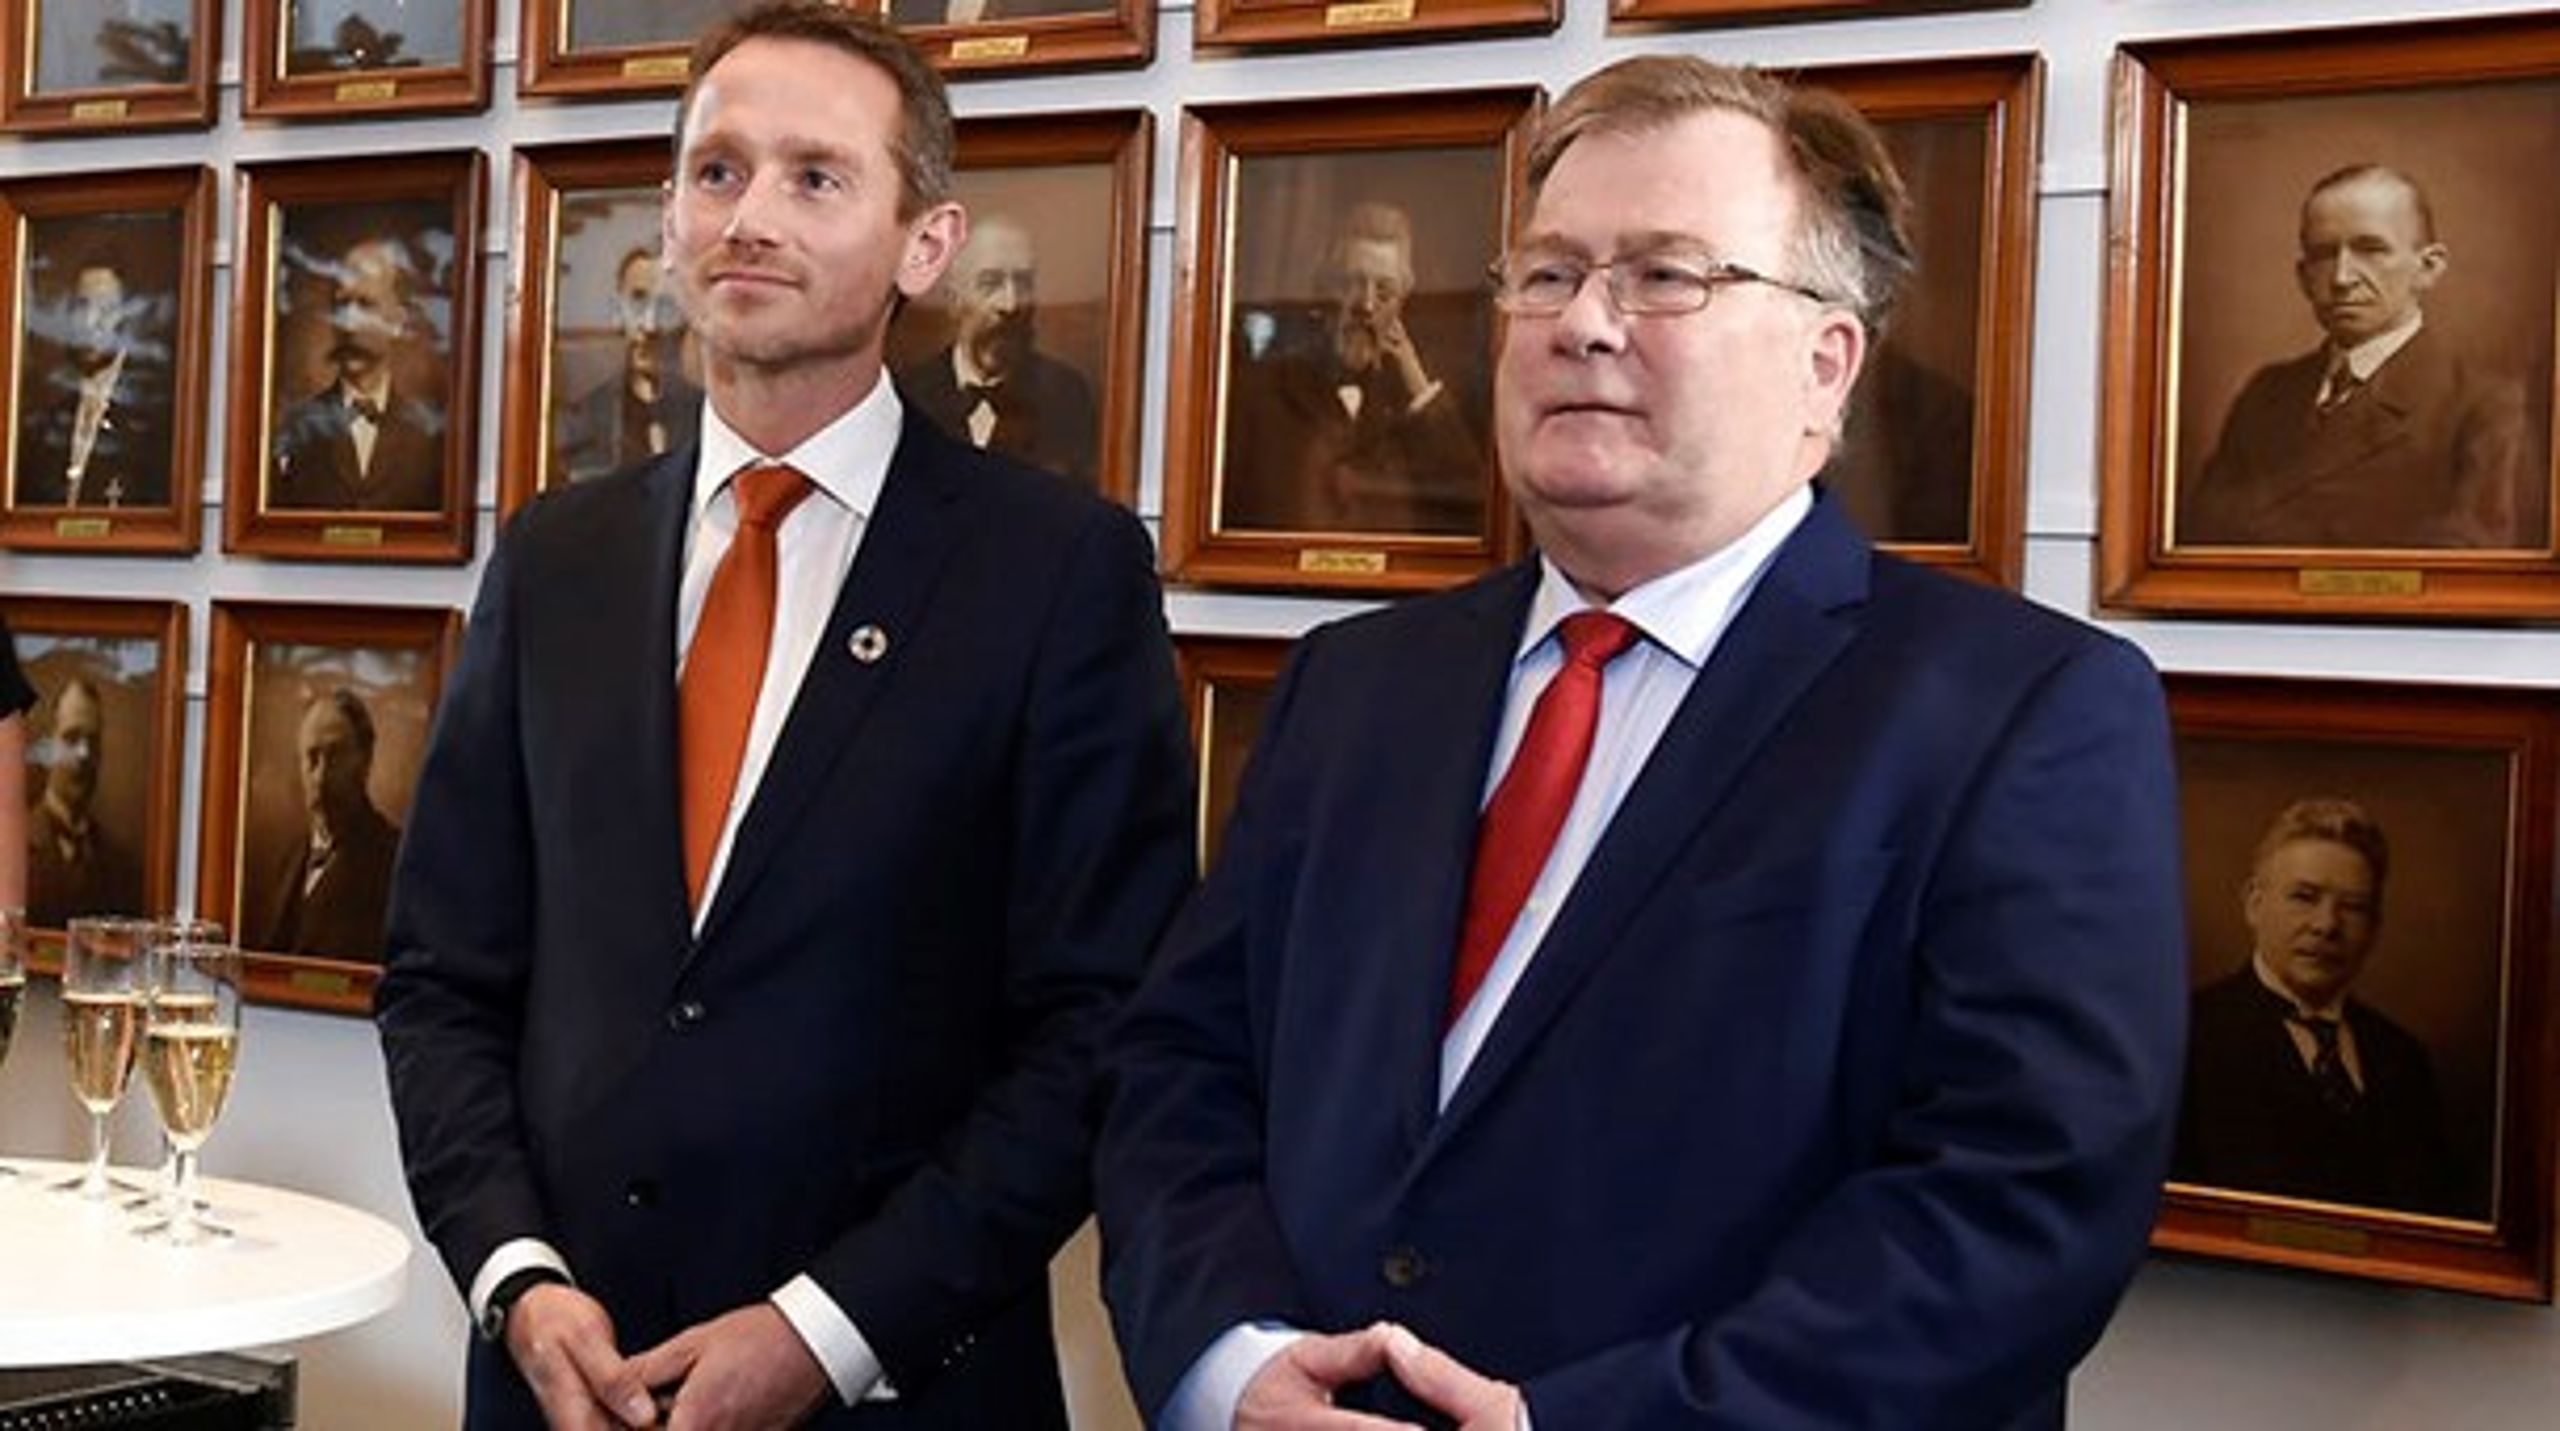 Kristian Jensen (V) er nyt ansigt som finansminister i de gamle gemakker i Slotsholmens røde bygning.